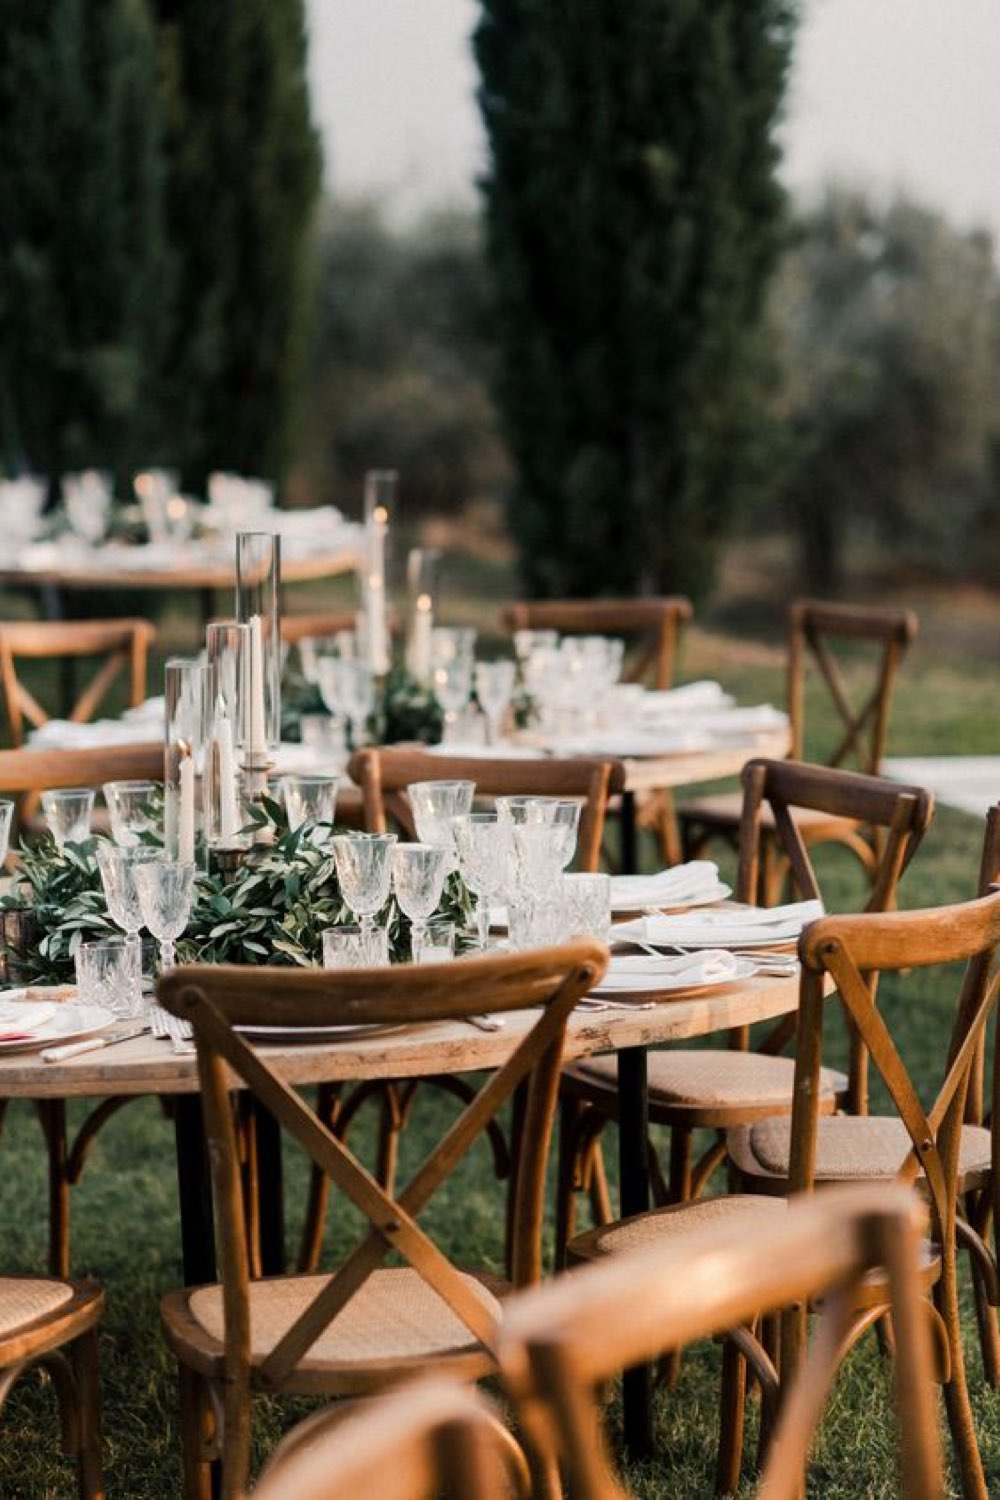 decoration mariage champetre romantique table ronde en bois chaise rétro ancienne décor chic en extérieur